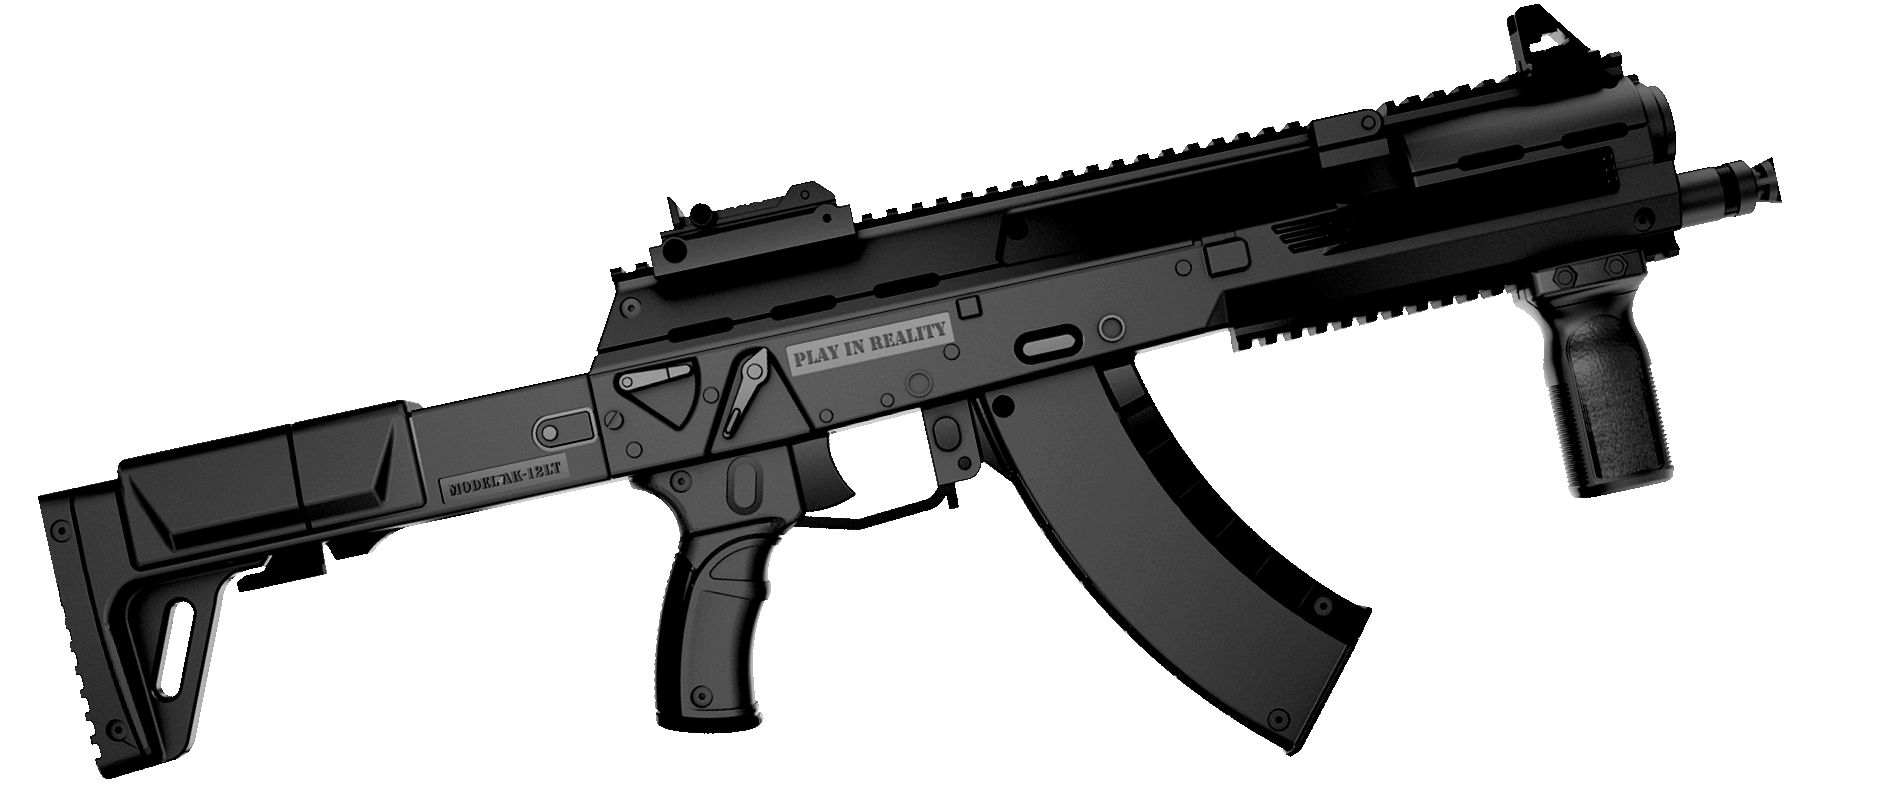 AK-12LT Predator